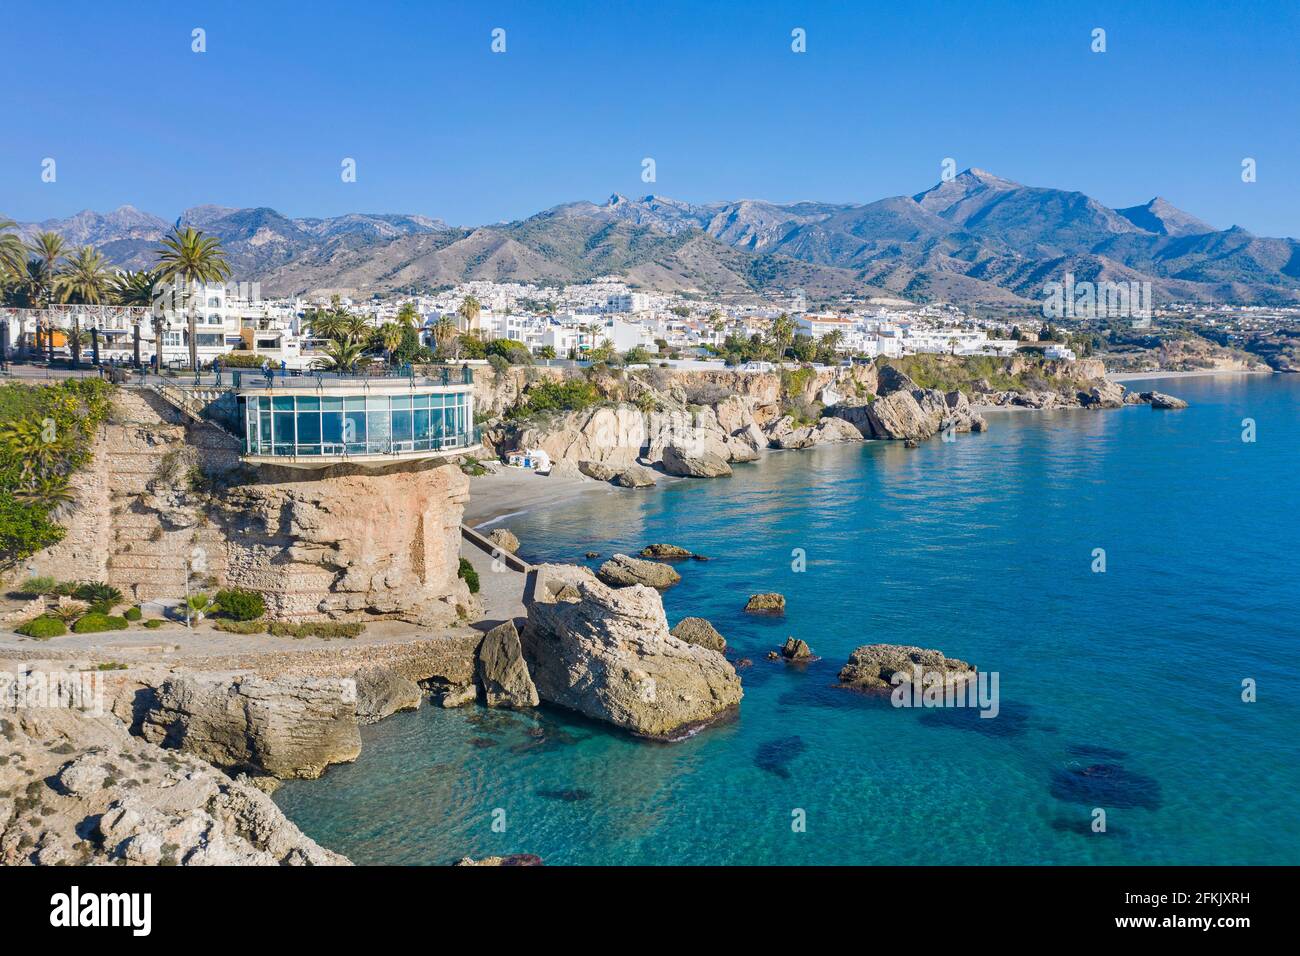 Balcon de Europa, Balkon Europas, Aussichtsplattform und Wahrzeichen der Küstenstadt Nerja, Andalusien, Costa del Sol, Spanien Stockfoto